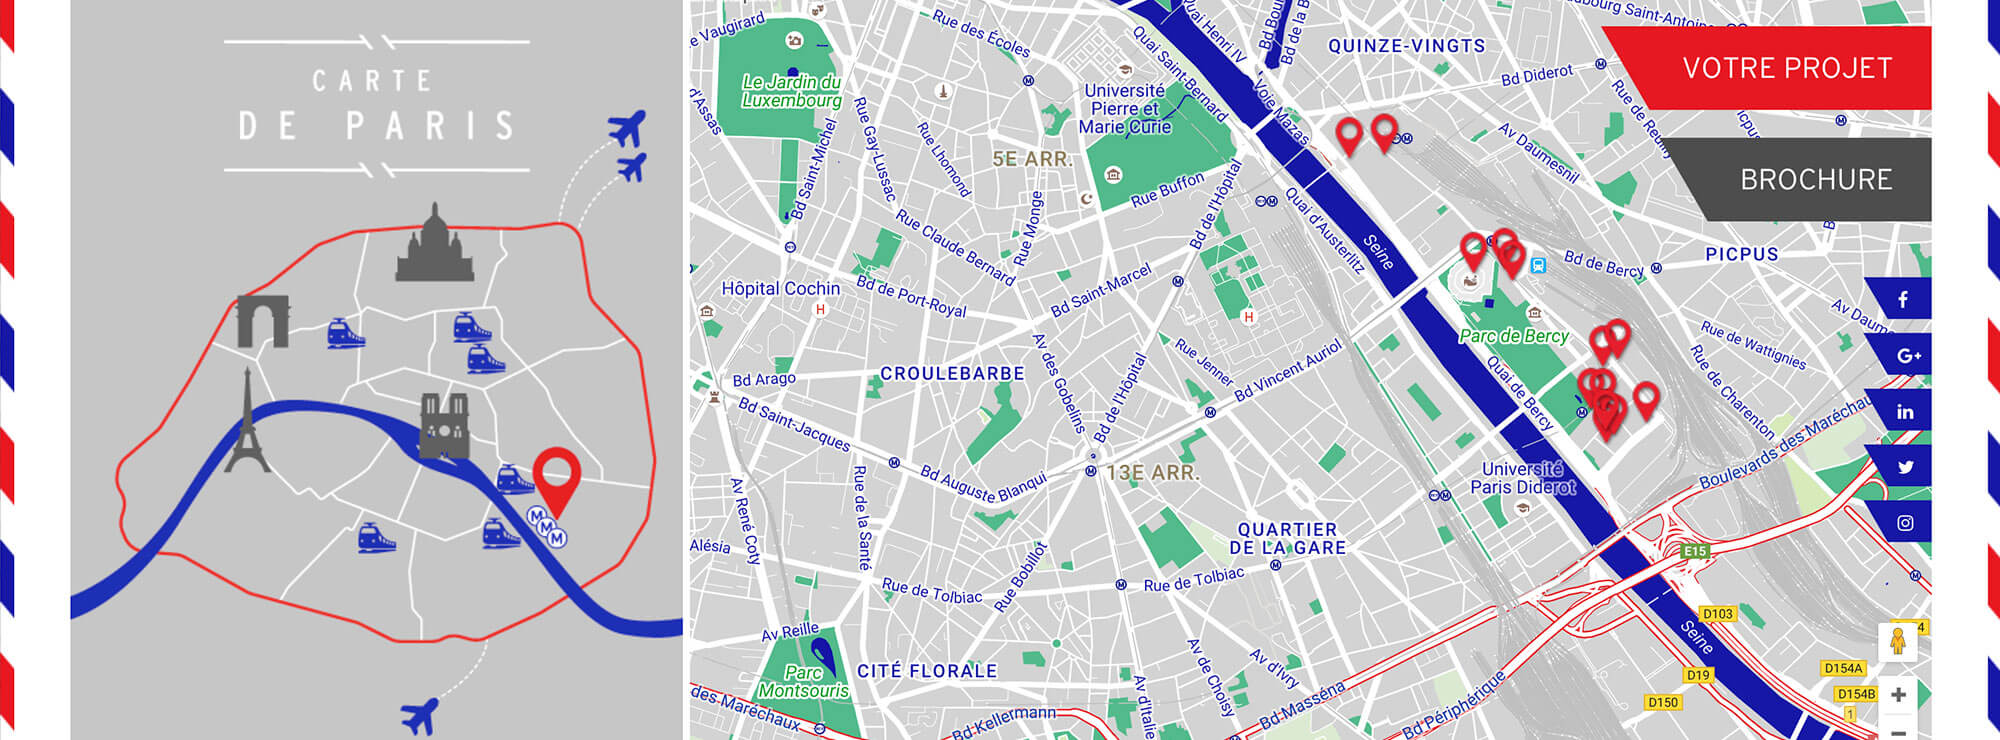 Destination Paris Bercy - une carte postale digitale parisienne